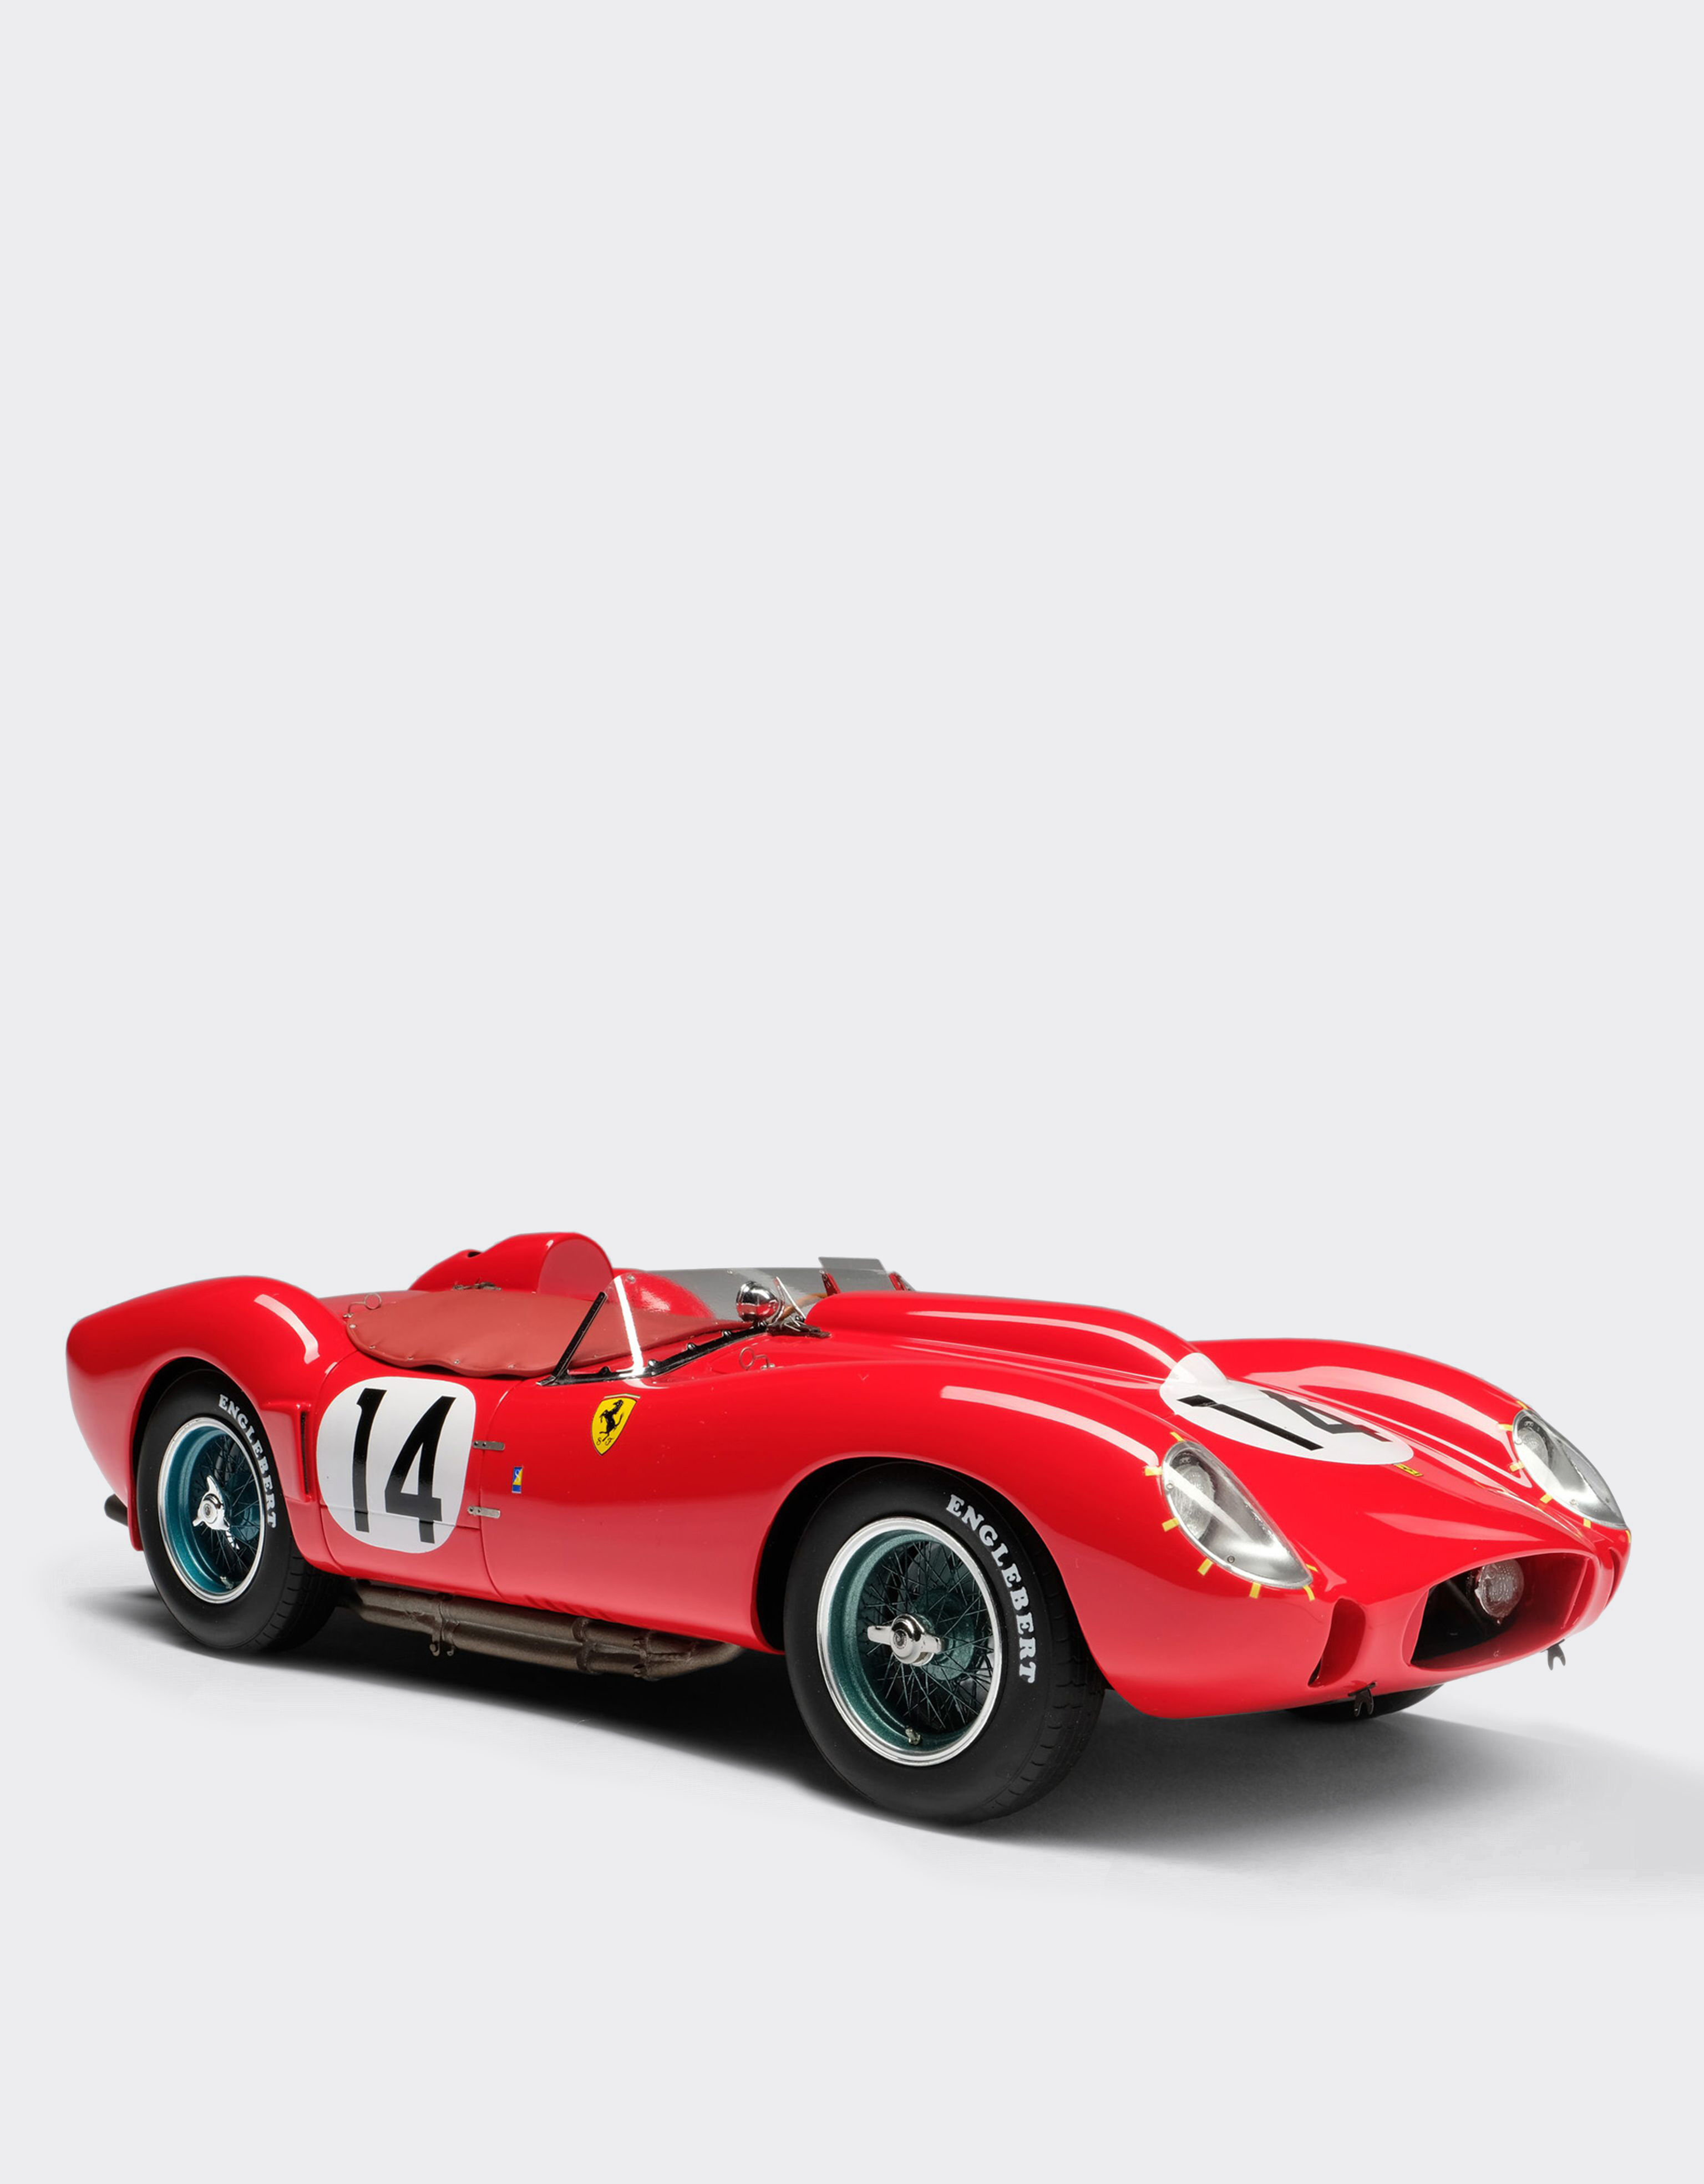 ${brand} Modellauto Ferrari 250 TR 1958 Le Mans im Maßstab 1:18 ${colorDescription} ${masterID}